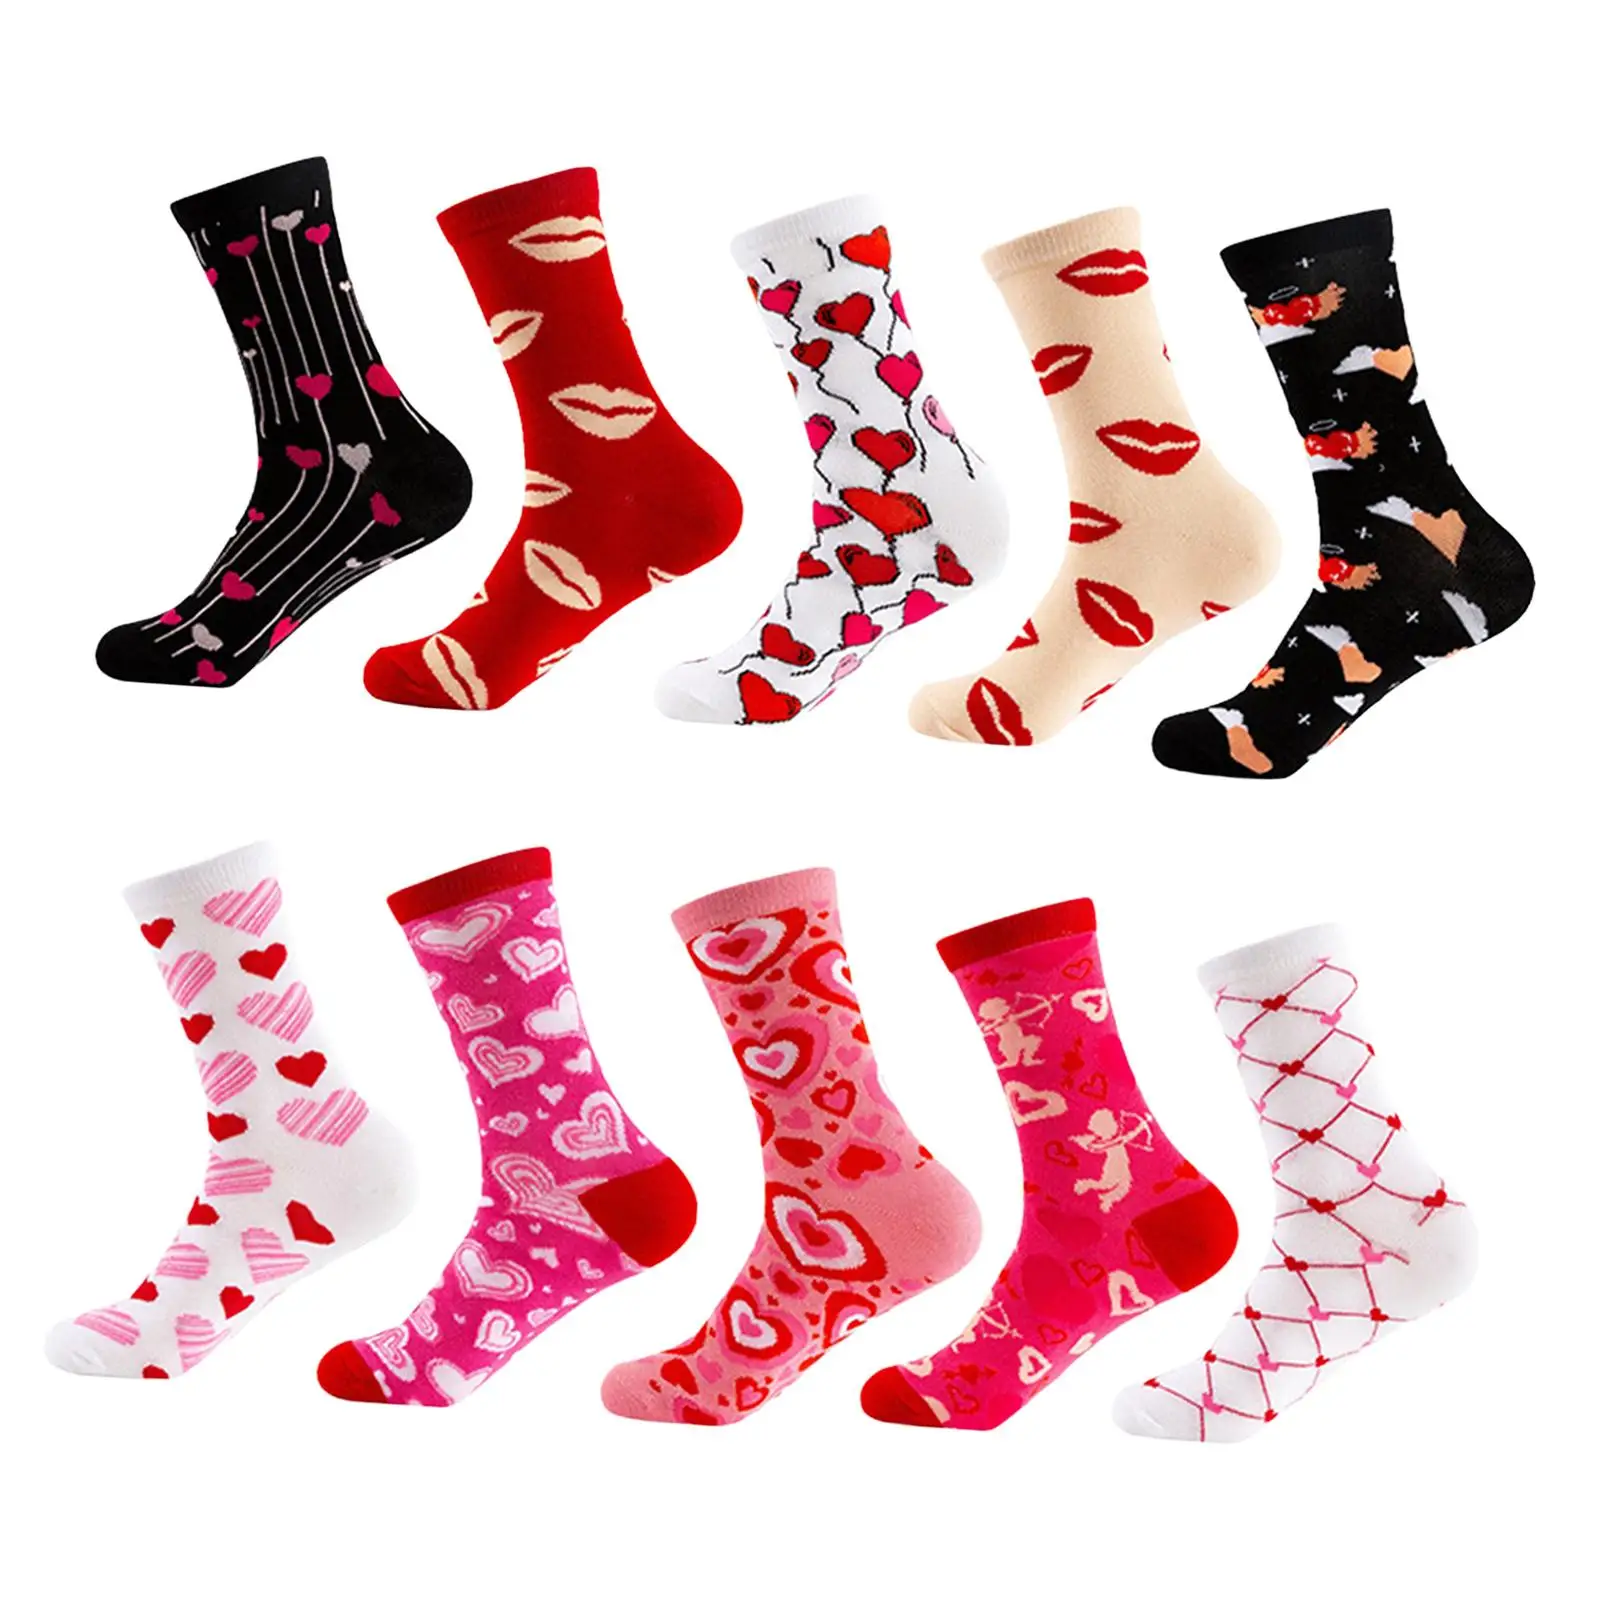 

10 Pairs Valentine's Day Socks for Women Girls Heart Socks Funny Lovely Breathable Crew Socks for Him Couples Boyfriend Mom Her